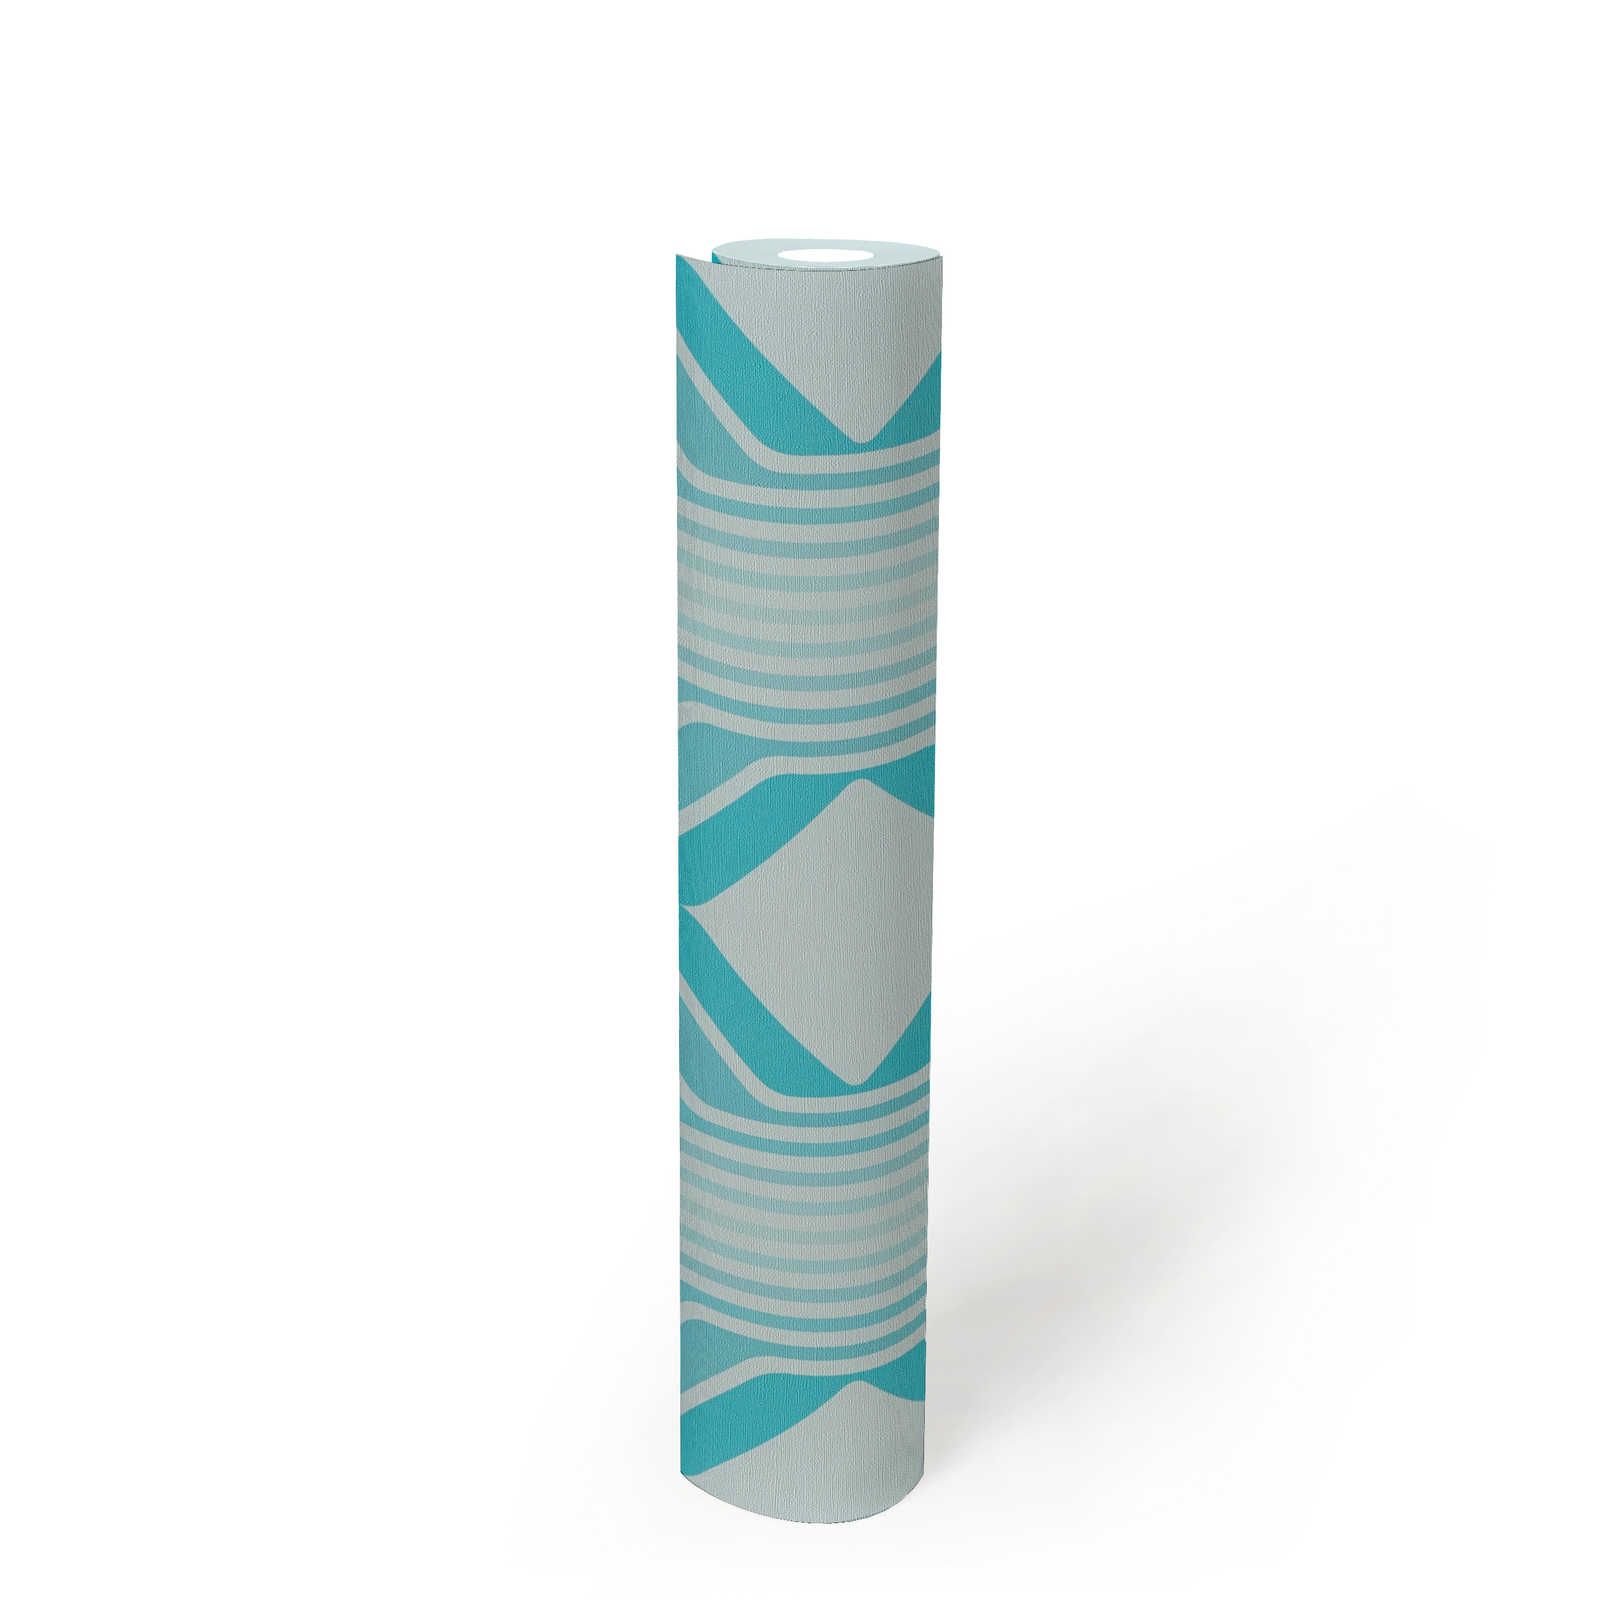             Motif losange sur papier peint intissé rétro - bleu, bleu clair, turquoise
        